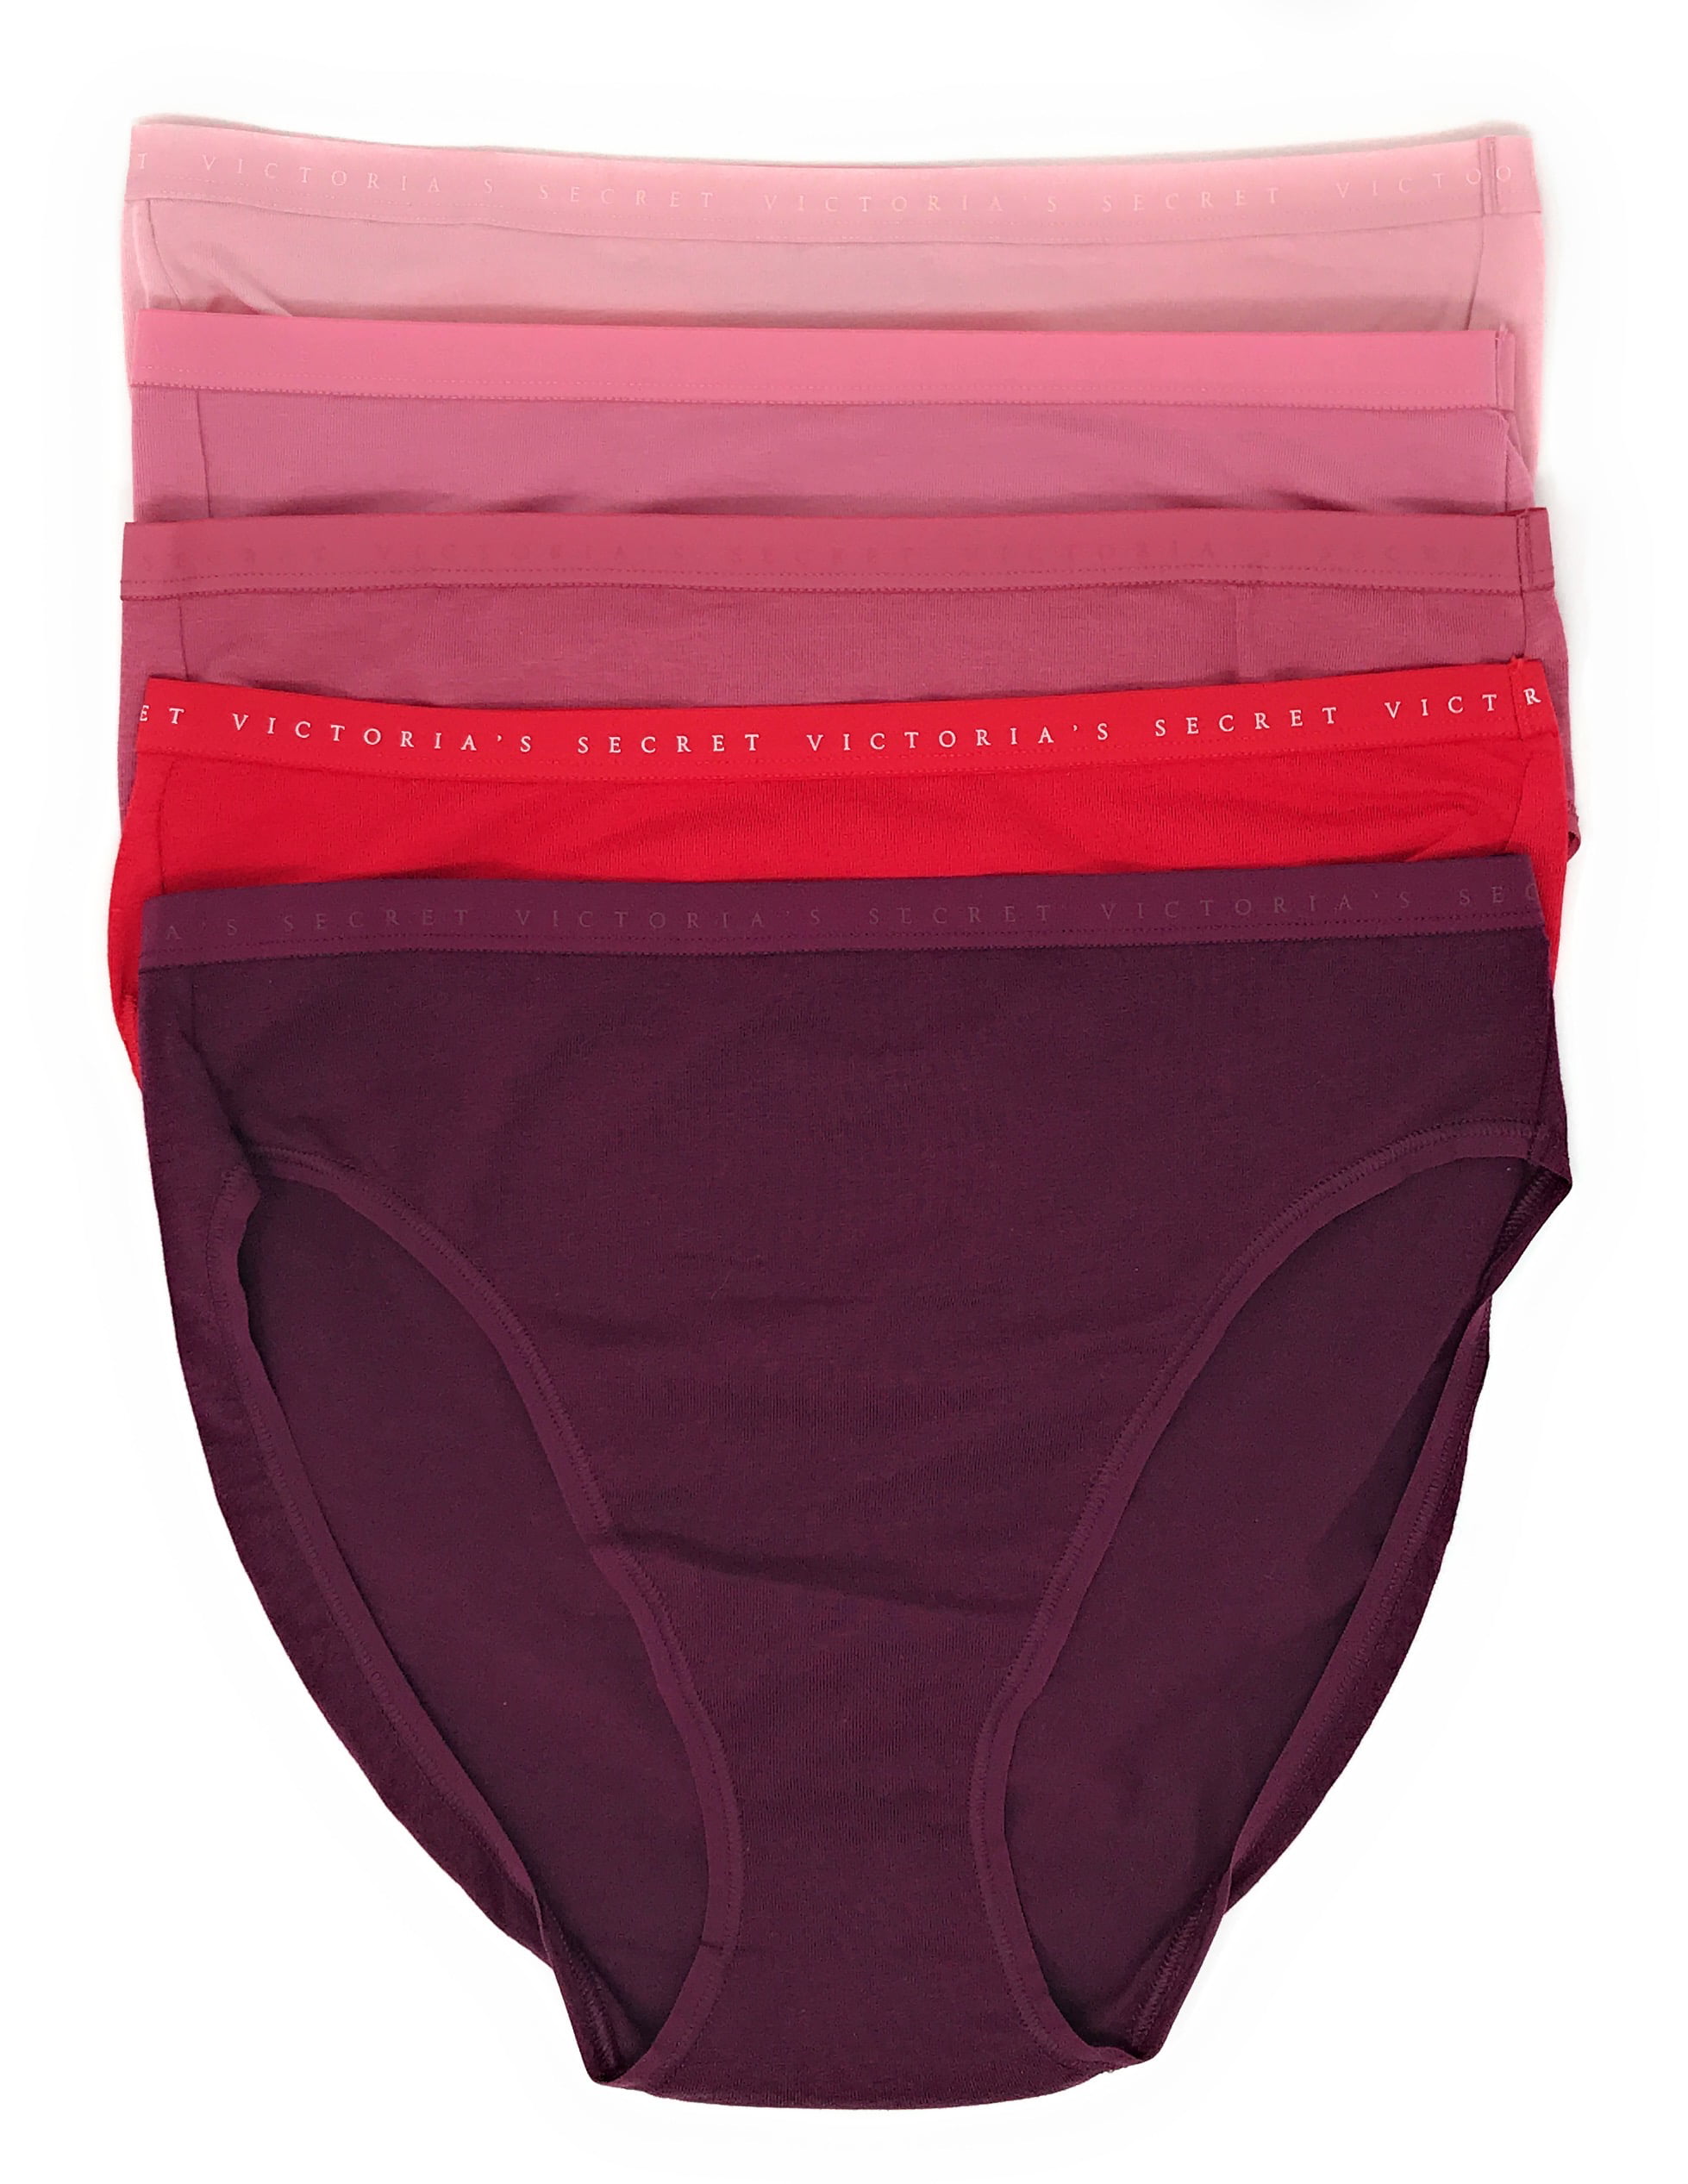 VICT*RIA S*CRETS - Lot of Women's Underwear From Large American Retail –  hotdealsliquidators